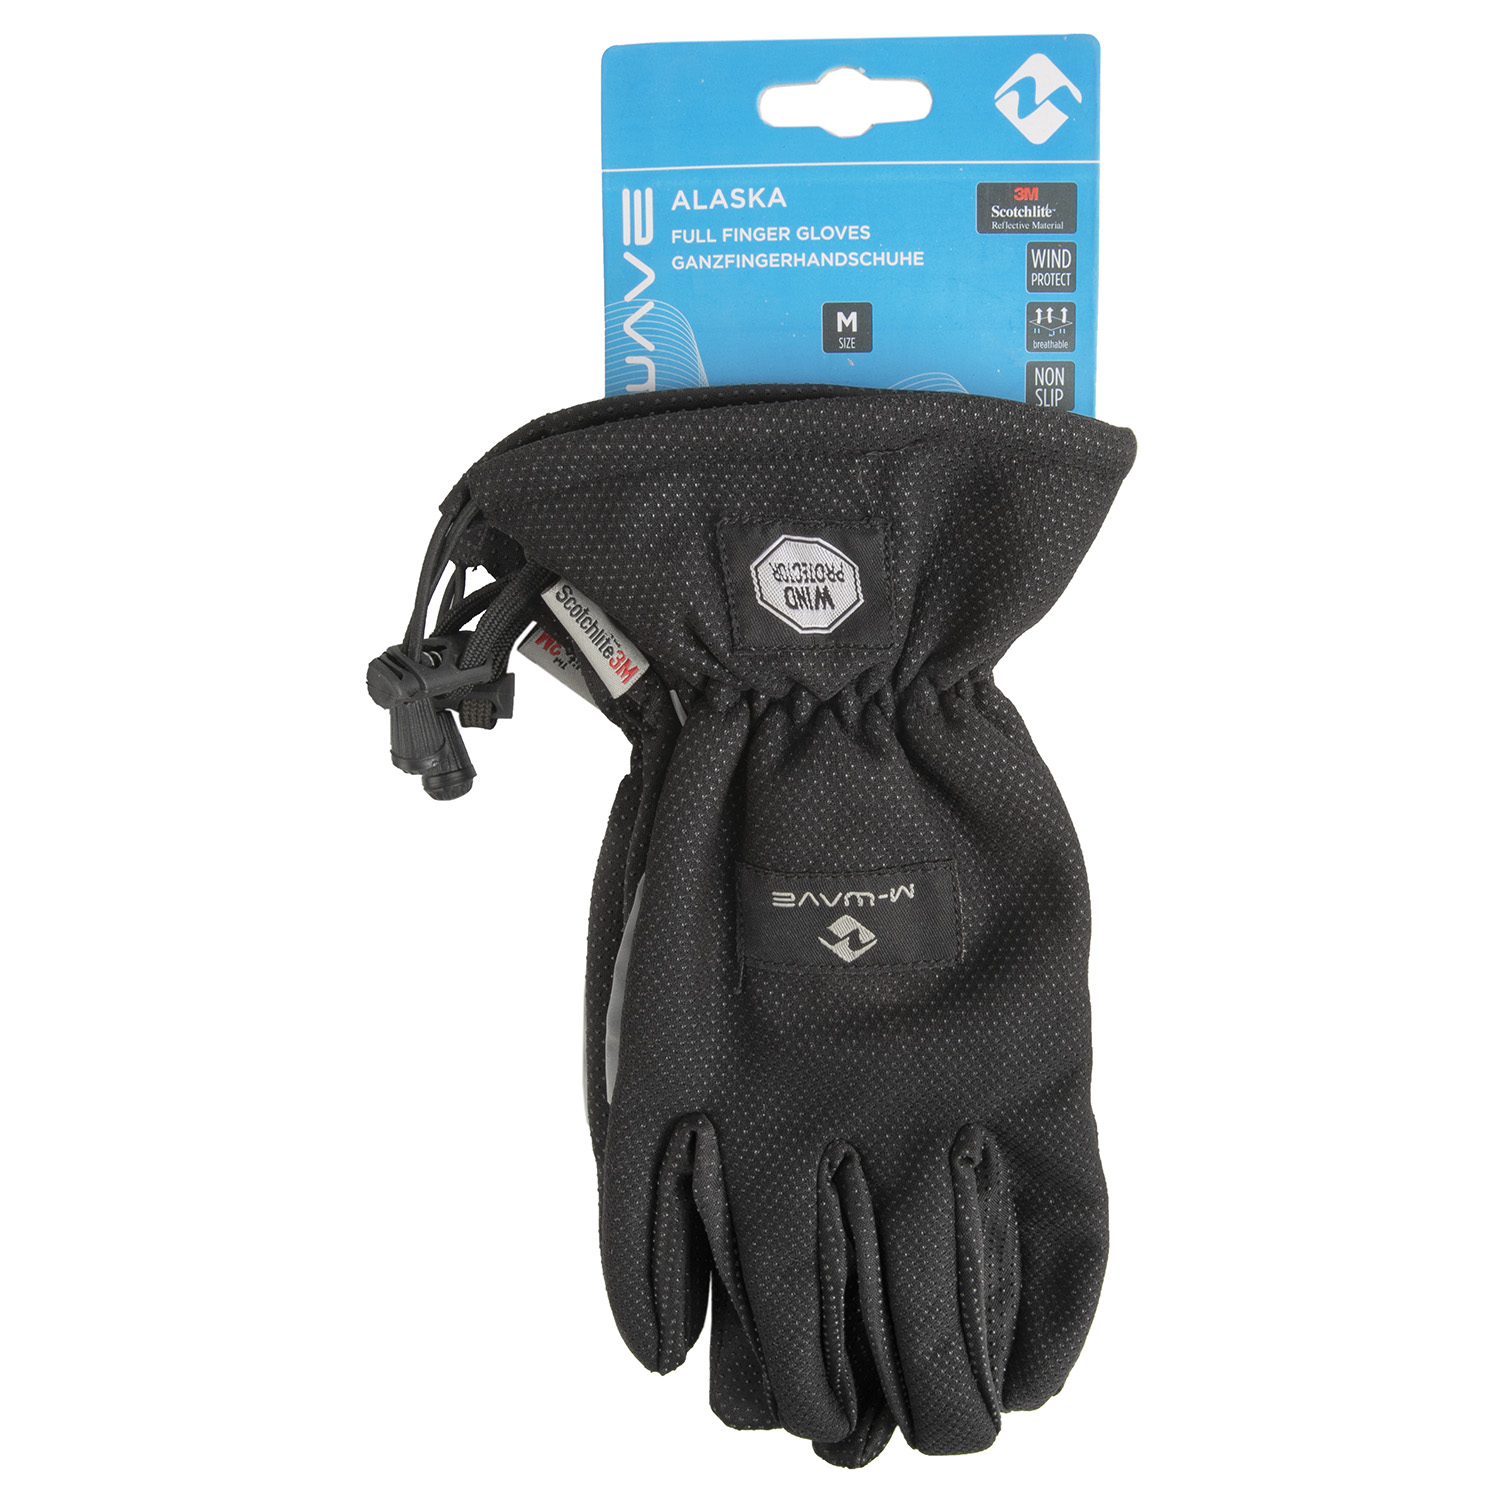 Winter Handschuh Gr. L/XL in Schwarz/Anthrazit